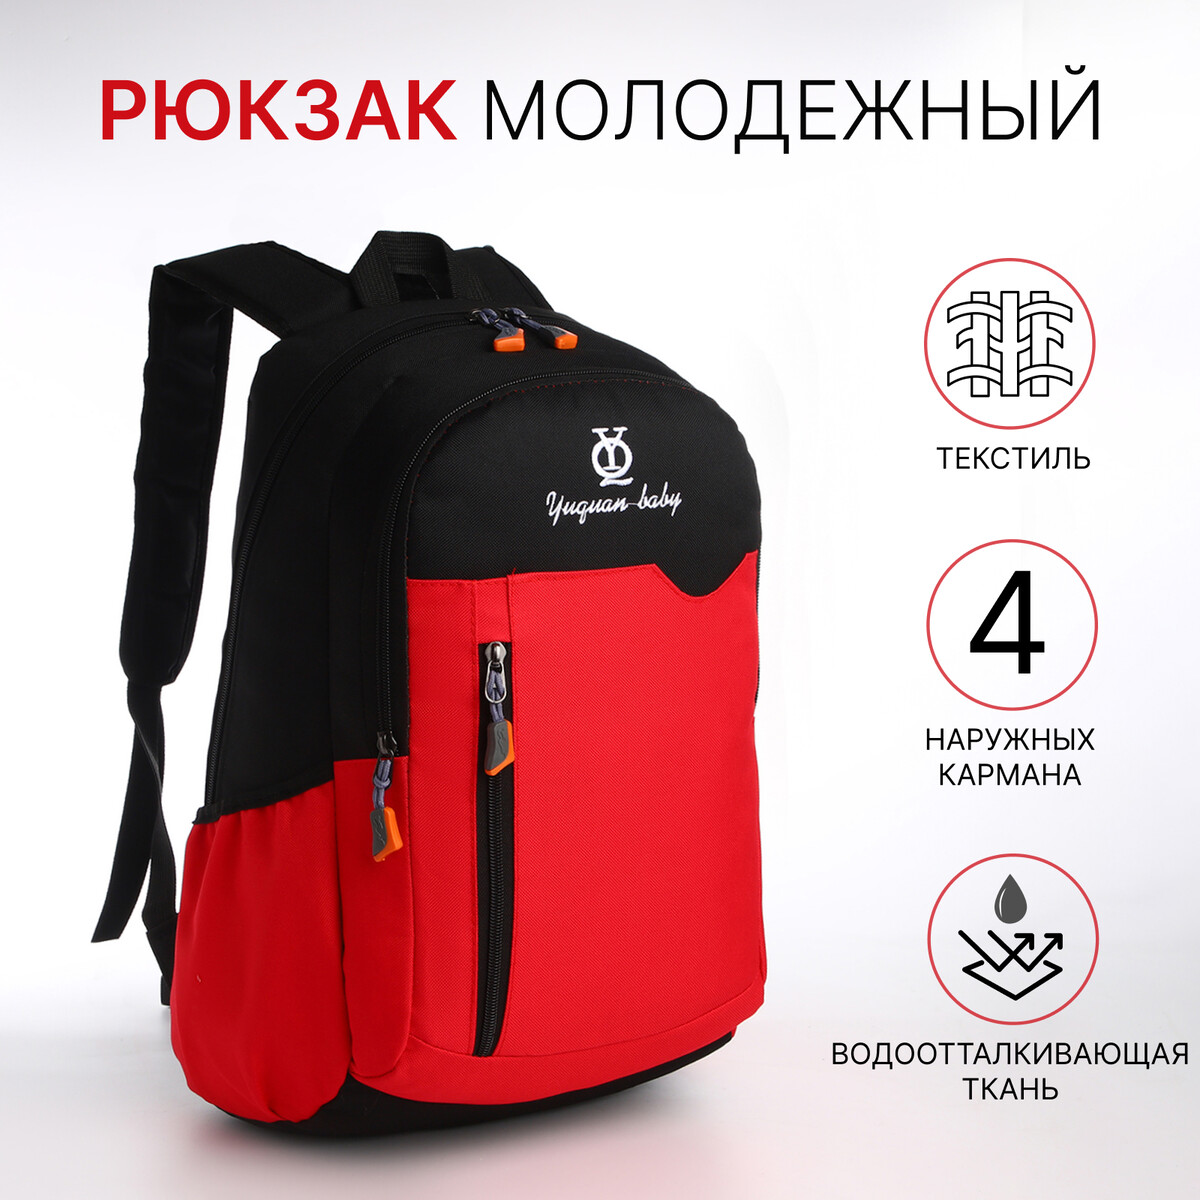 Рюкзак школьный, 2 отдела на молнии, 3 кармана, цвет черный/красный рюкзак wenger next ryde 611991 16 красный антрацит 26 л